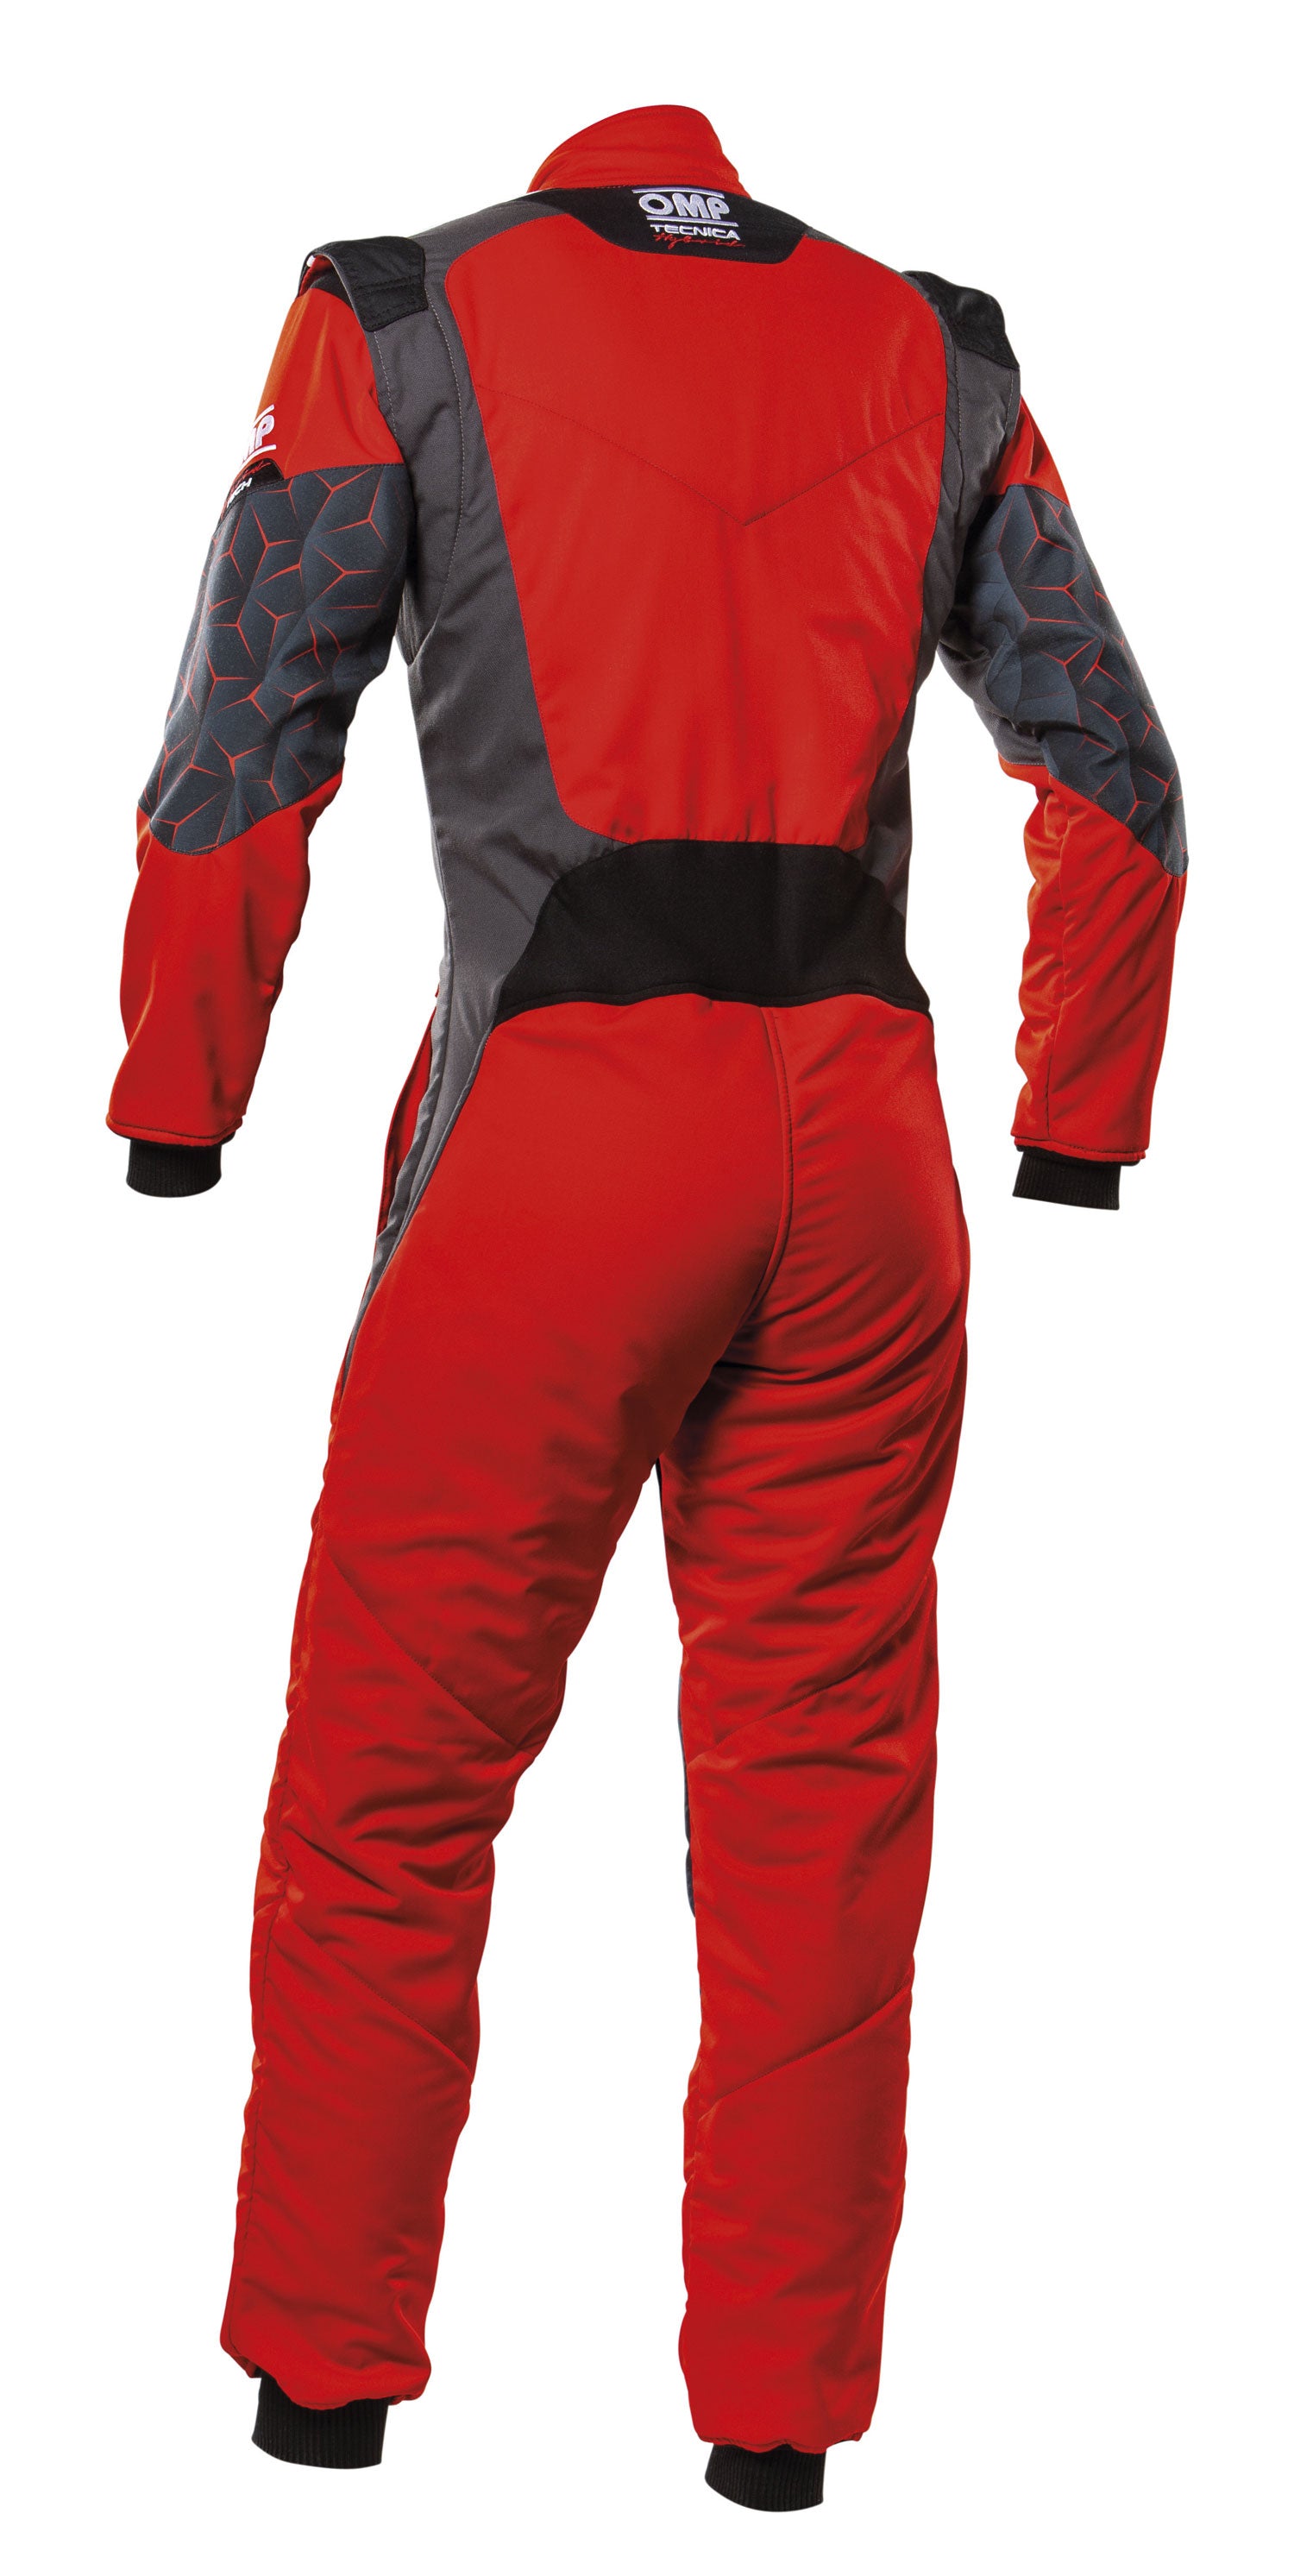 OMP IA0-1864-A01-060-44 (IA0186406044) TECNICA HYBRID Racing suit, FIA 8556-2018, red/black, size 44 Photo-1 